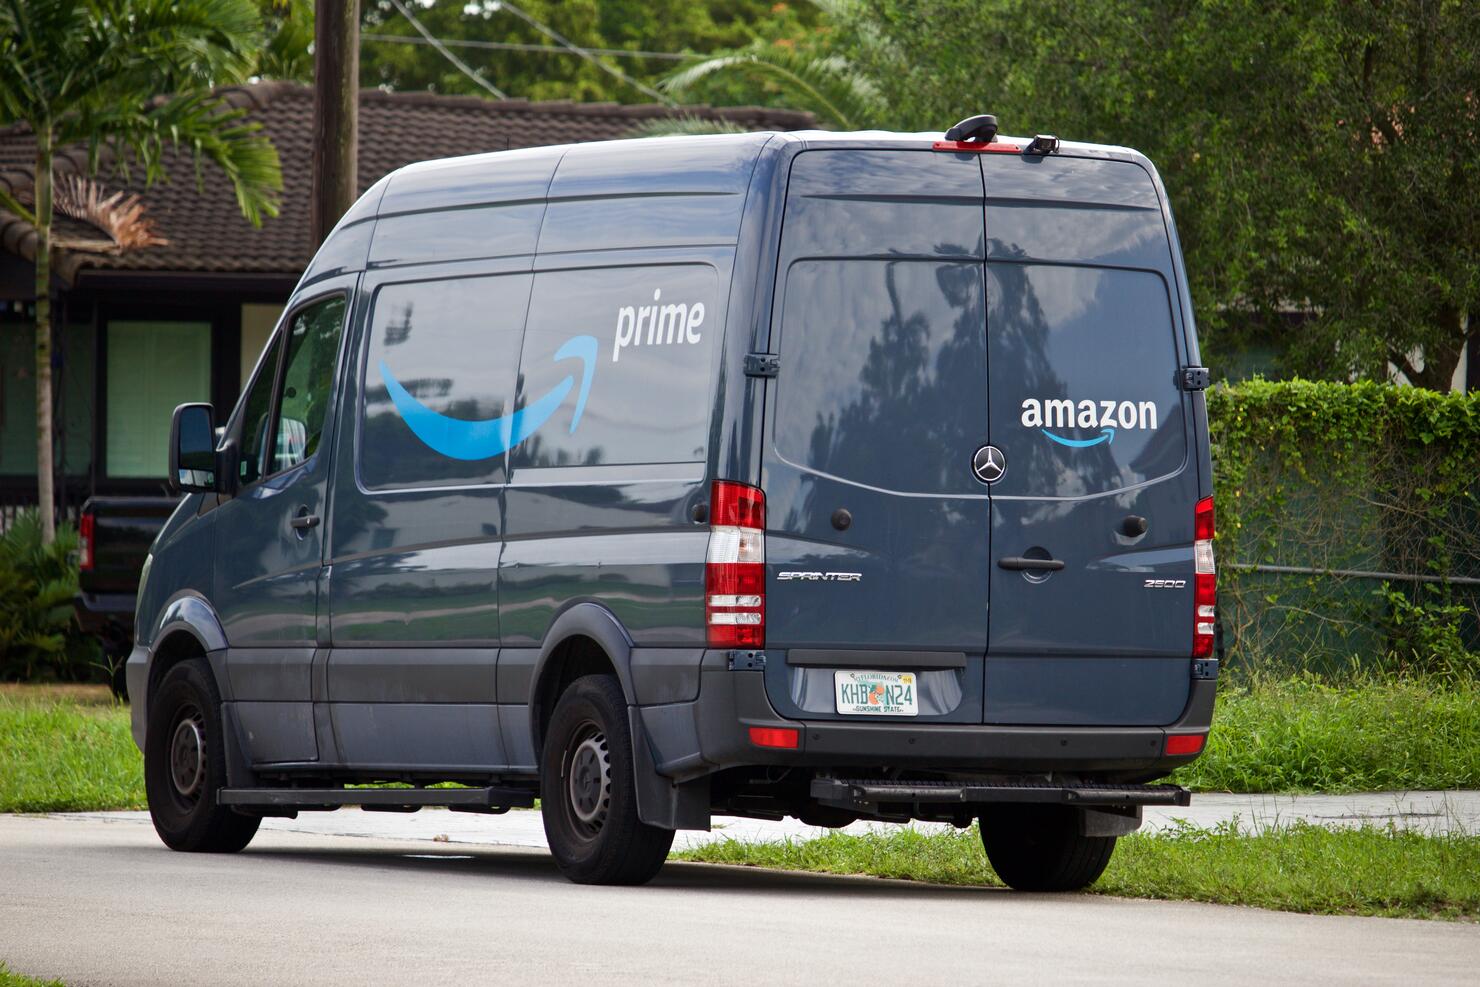 Amazon prime delivery van